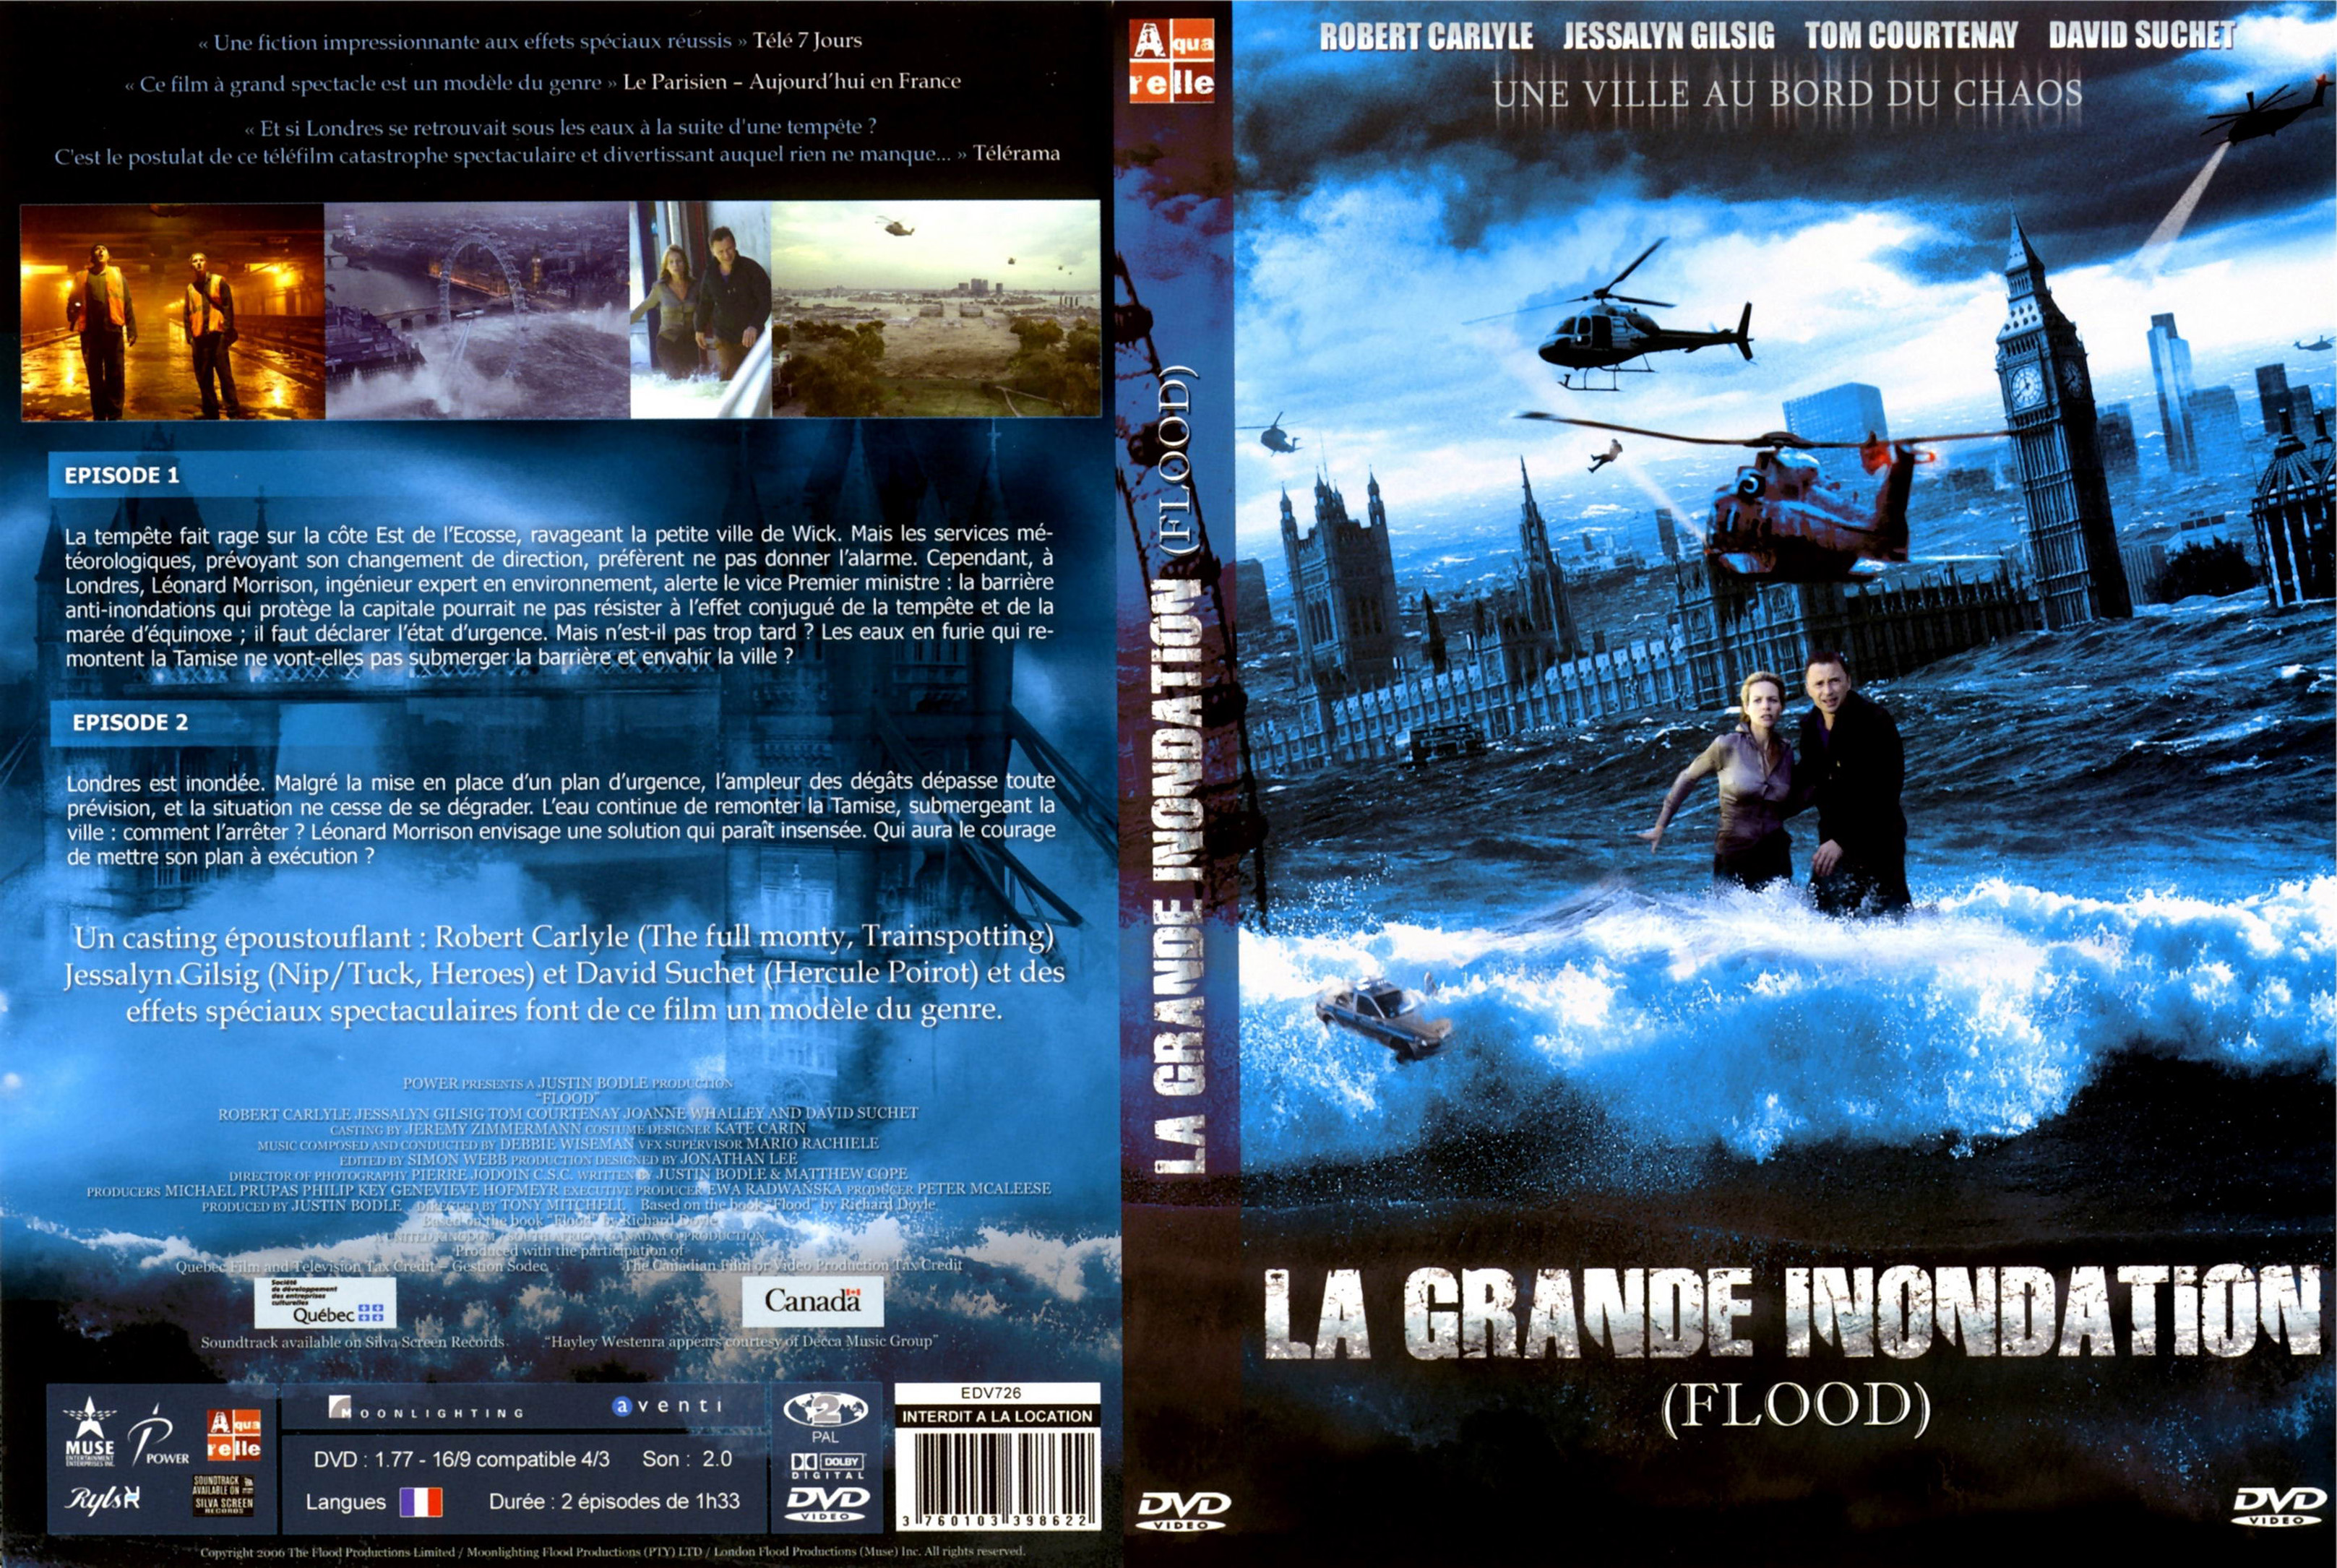 Jaquette DVD La grande inondation